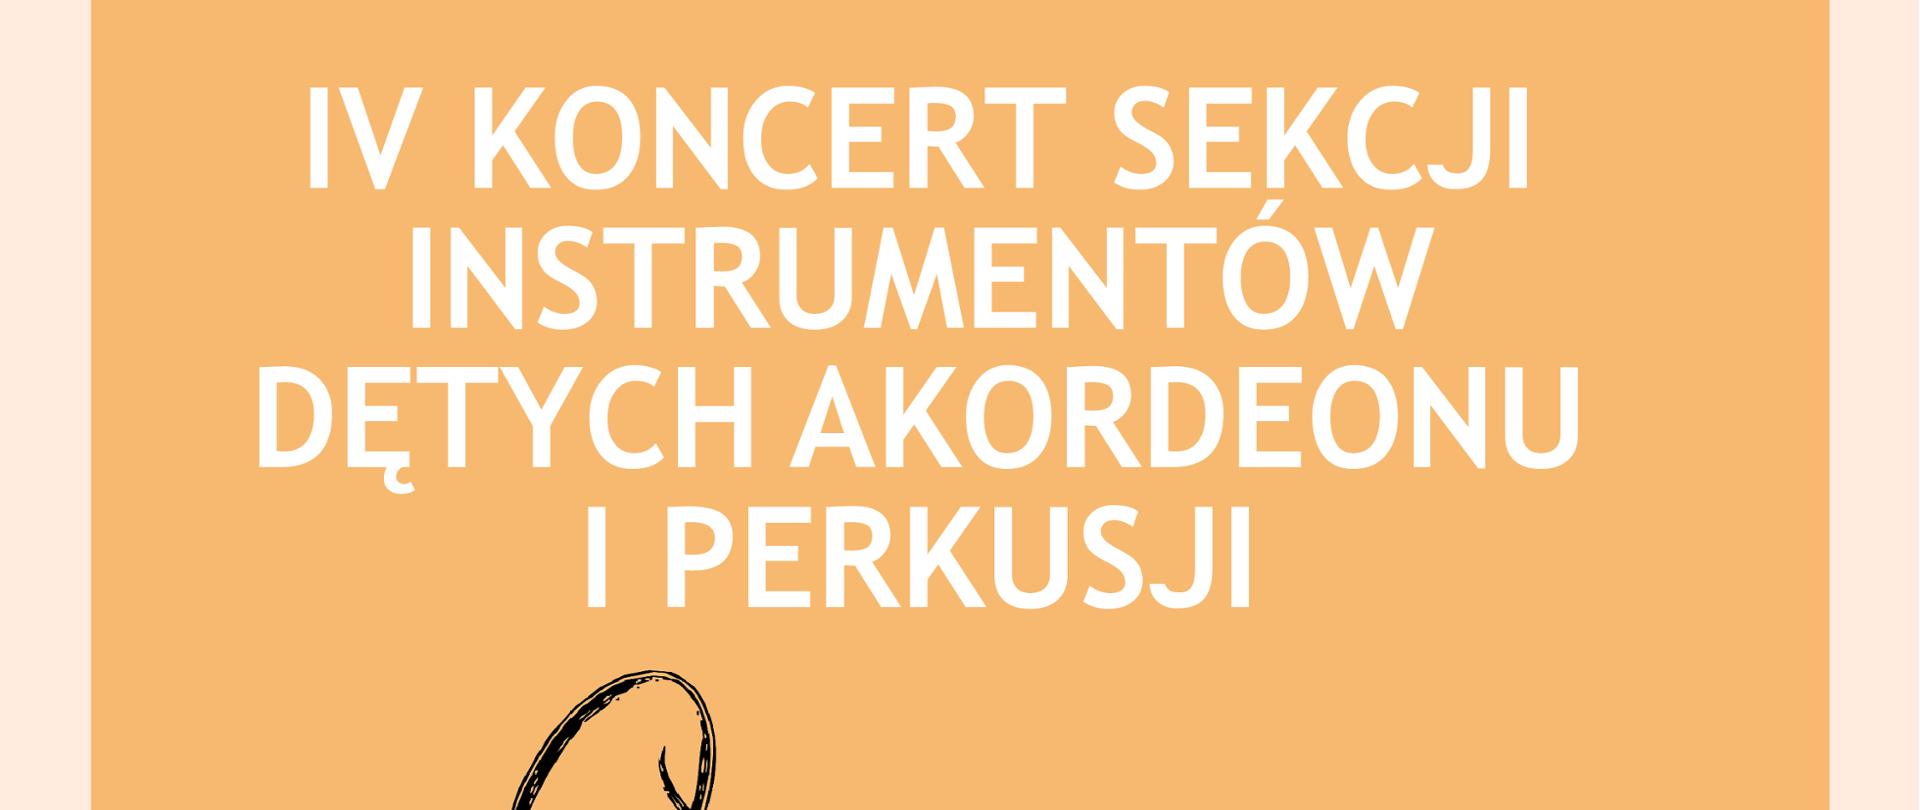 Plakat z wydarzeniem - IV Koncert Sekcji Instrumentów Dętych, Akordeonu i Perkusji, plakat znajduje się na tle naprzemiennie pudrowy róż, beż, w tle znajduje się również szkic trąbki. Koncert odbędzie się 26 kwietnia 2023r. w sali koncertowej ZPSM w Dębicy